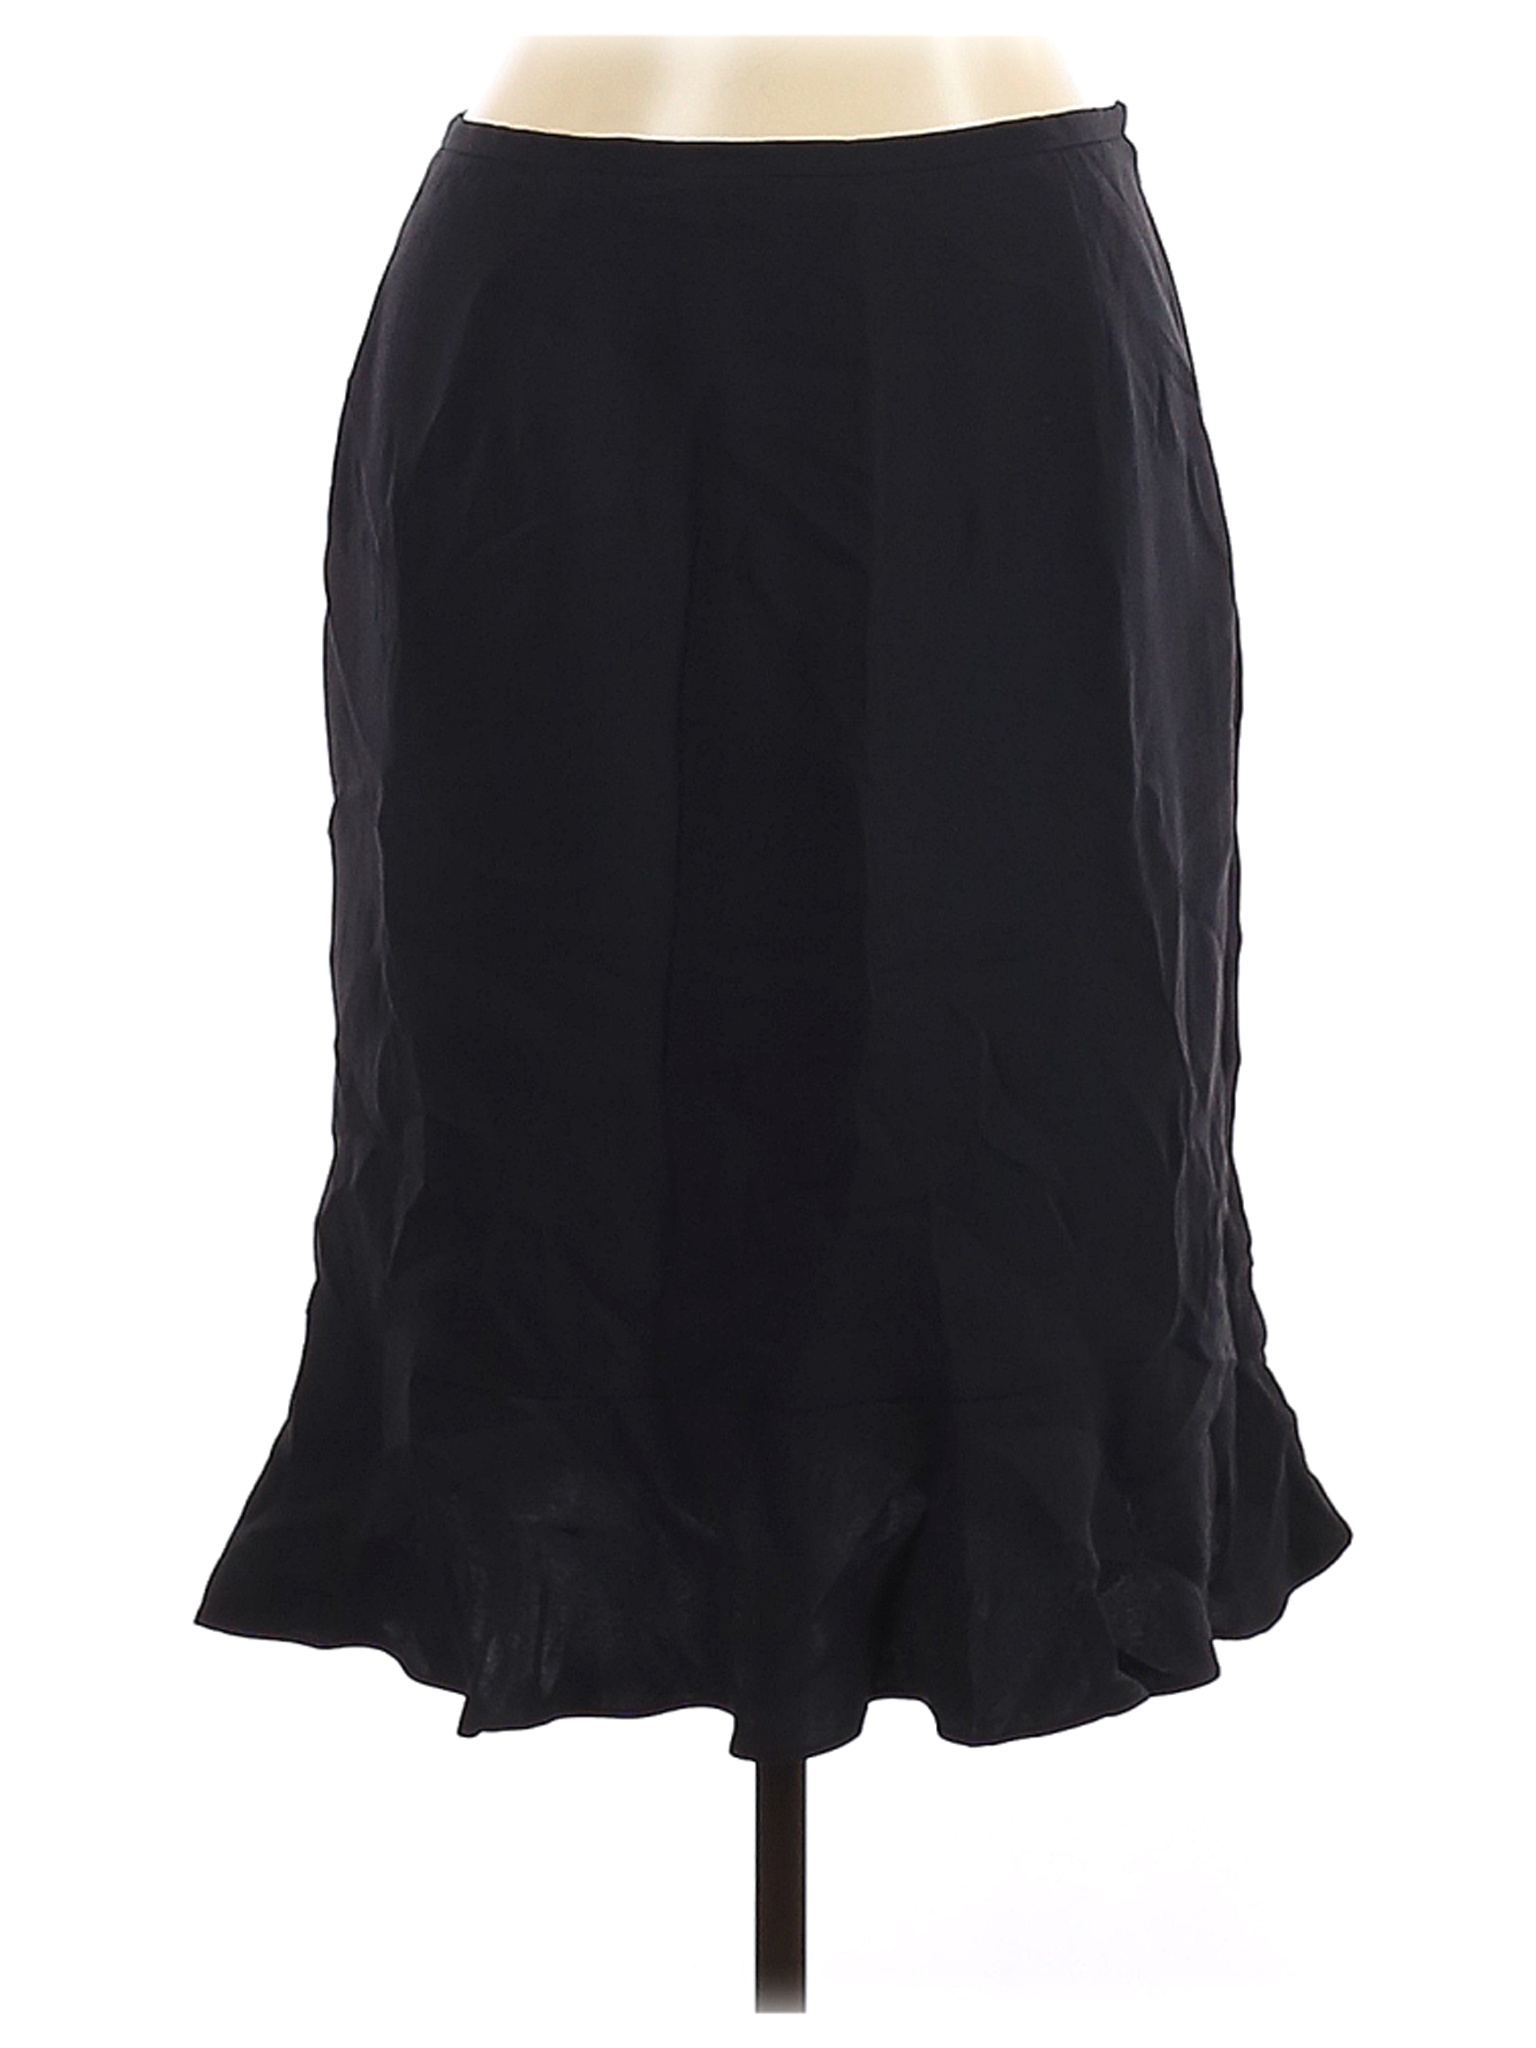 Kate Hill Women Black Silk Skirt 14 Petites | eBay